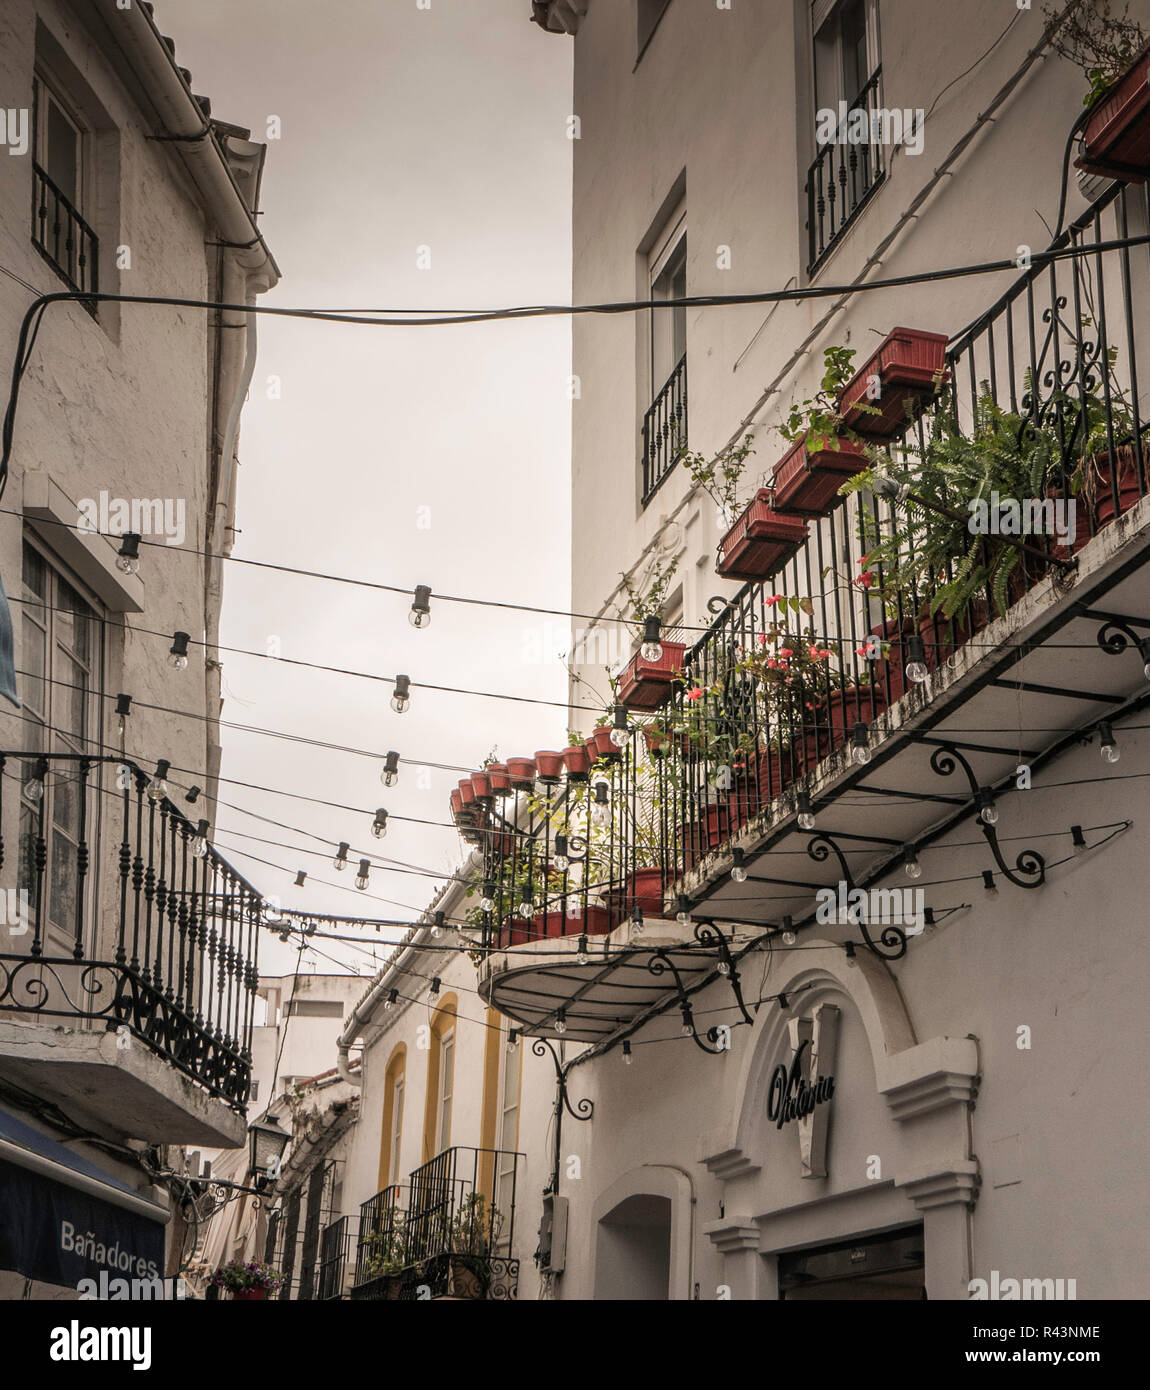 Ruelle bordée d'appartements pittoresque vieille ville de Marbella, Marbella, Espagne. Banque D'Images